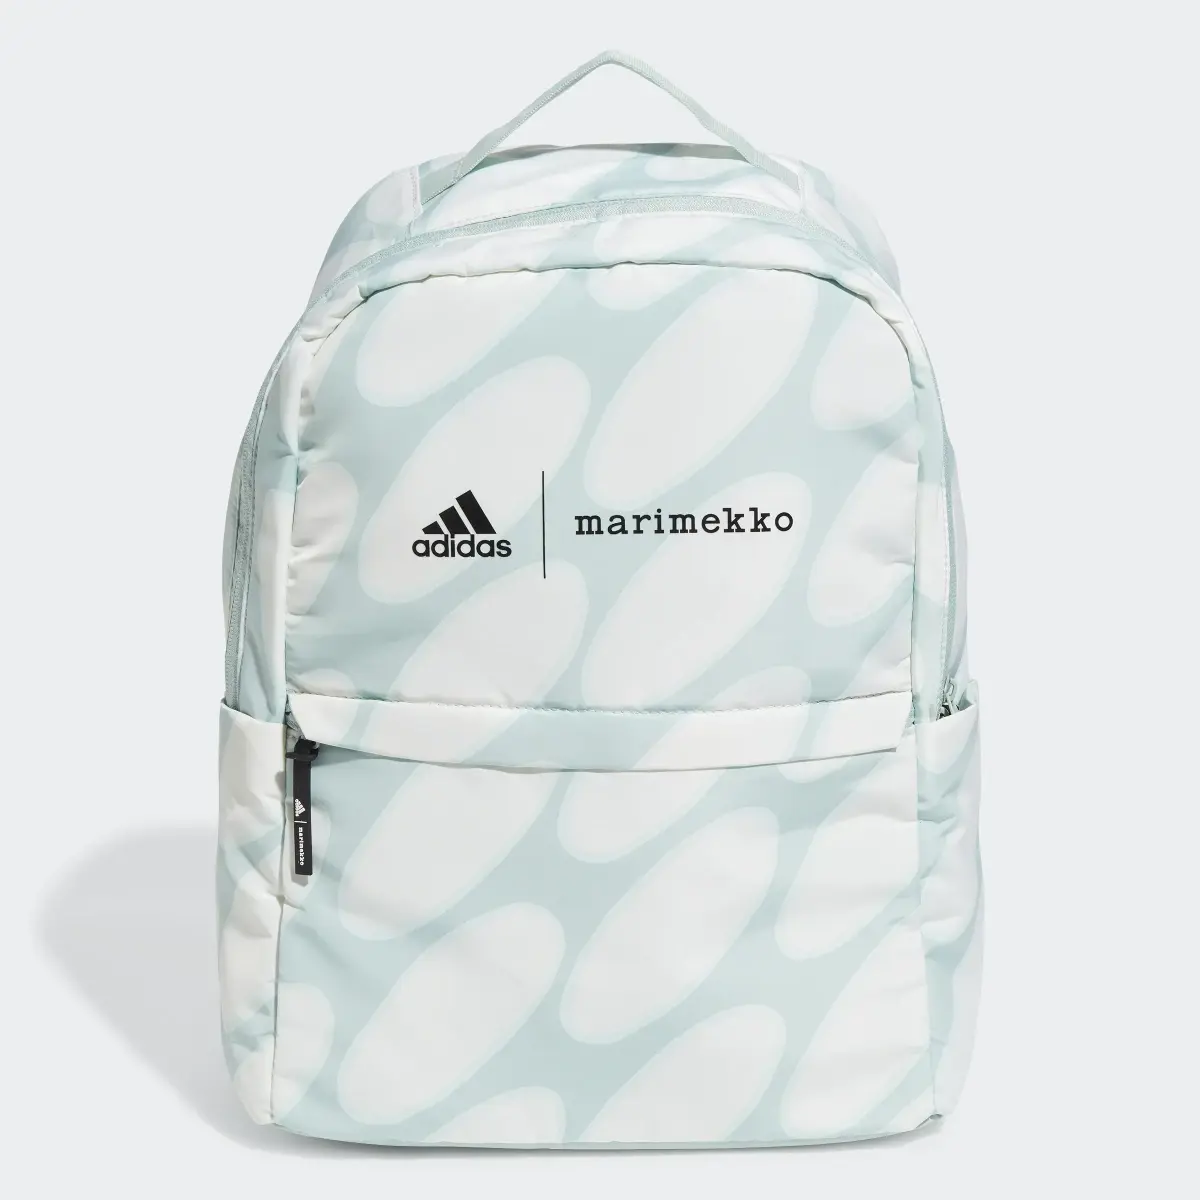 Adidas x Marimekko Backpack. 1